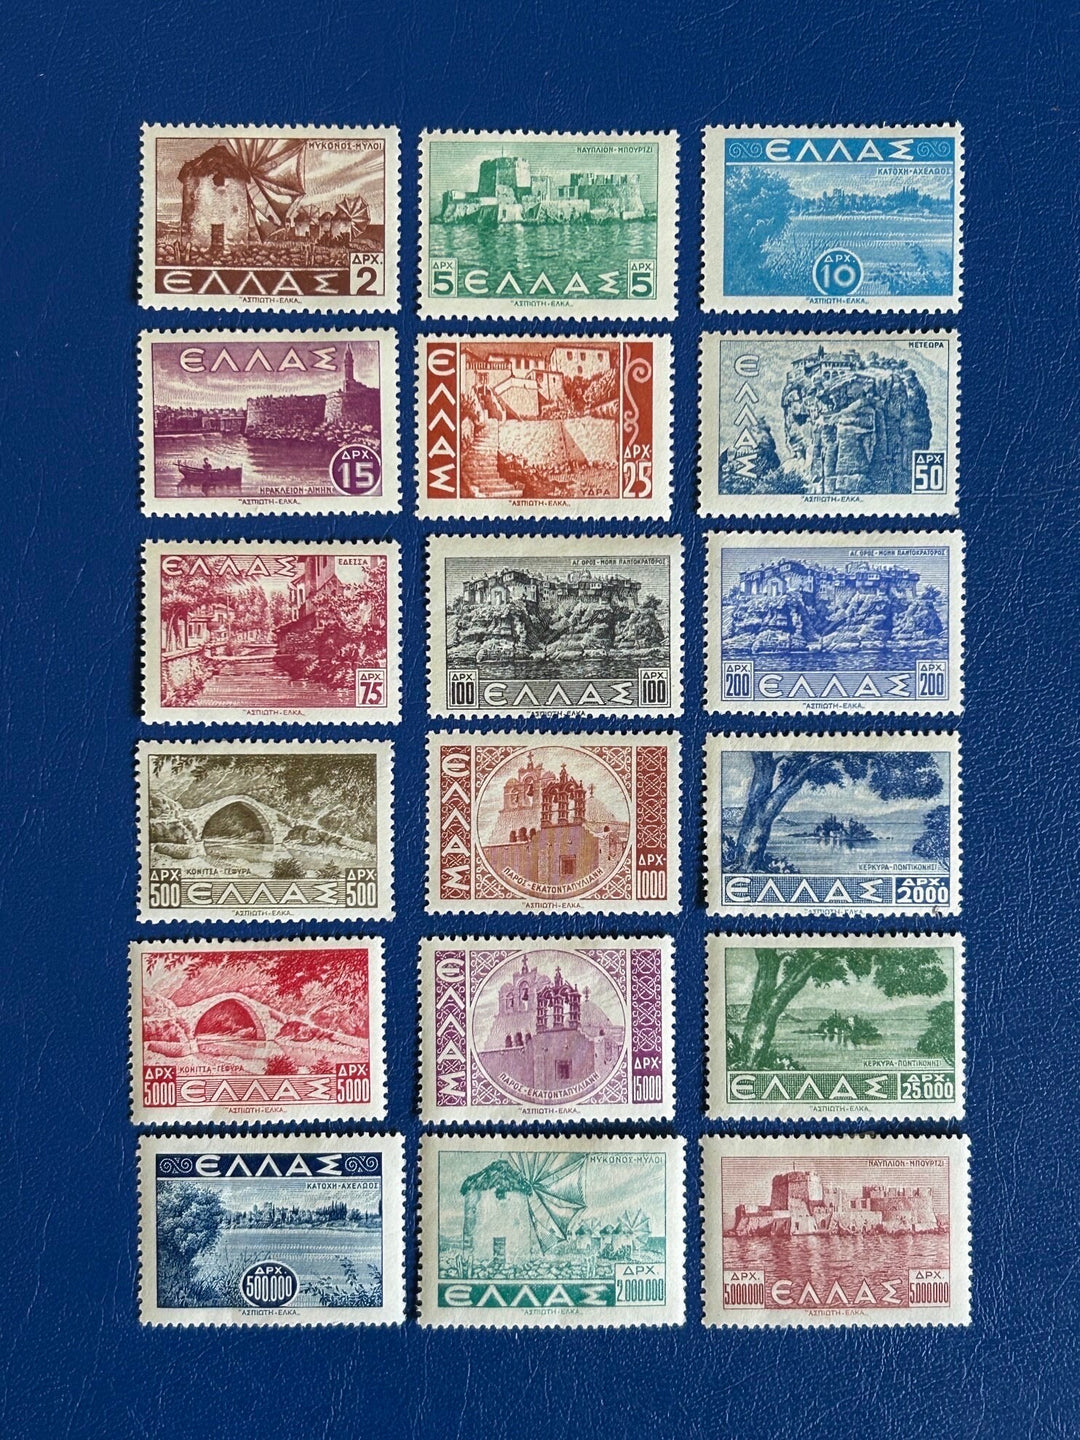 Greece - Original Vintage Postage Stamps- 1942 - Landscapes - for the collector, artist or crafter